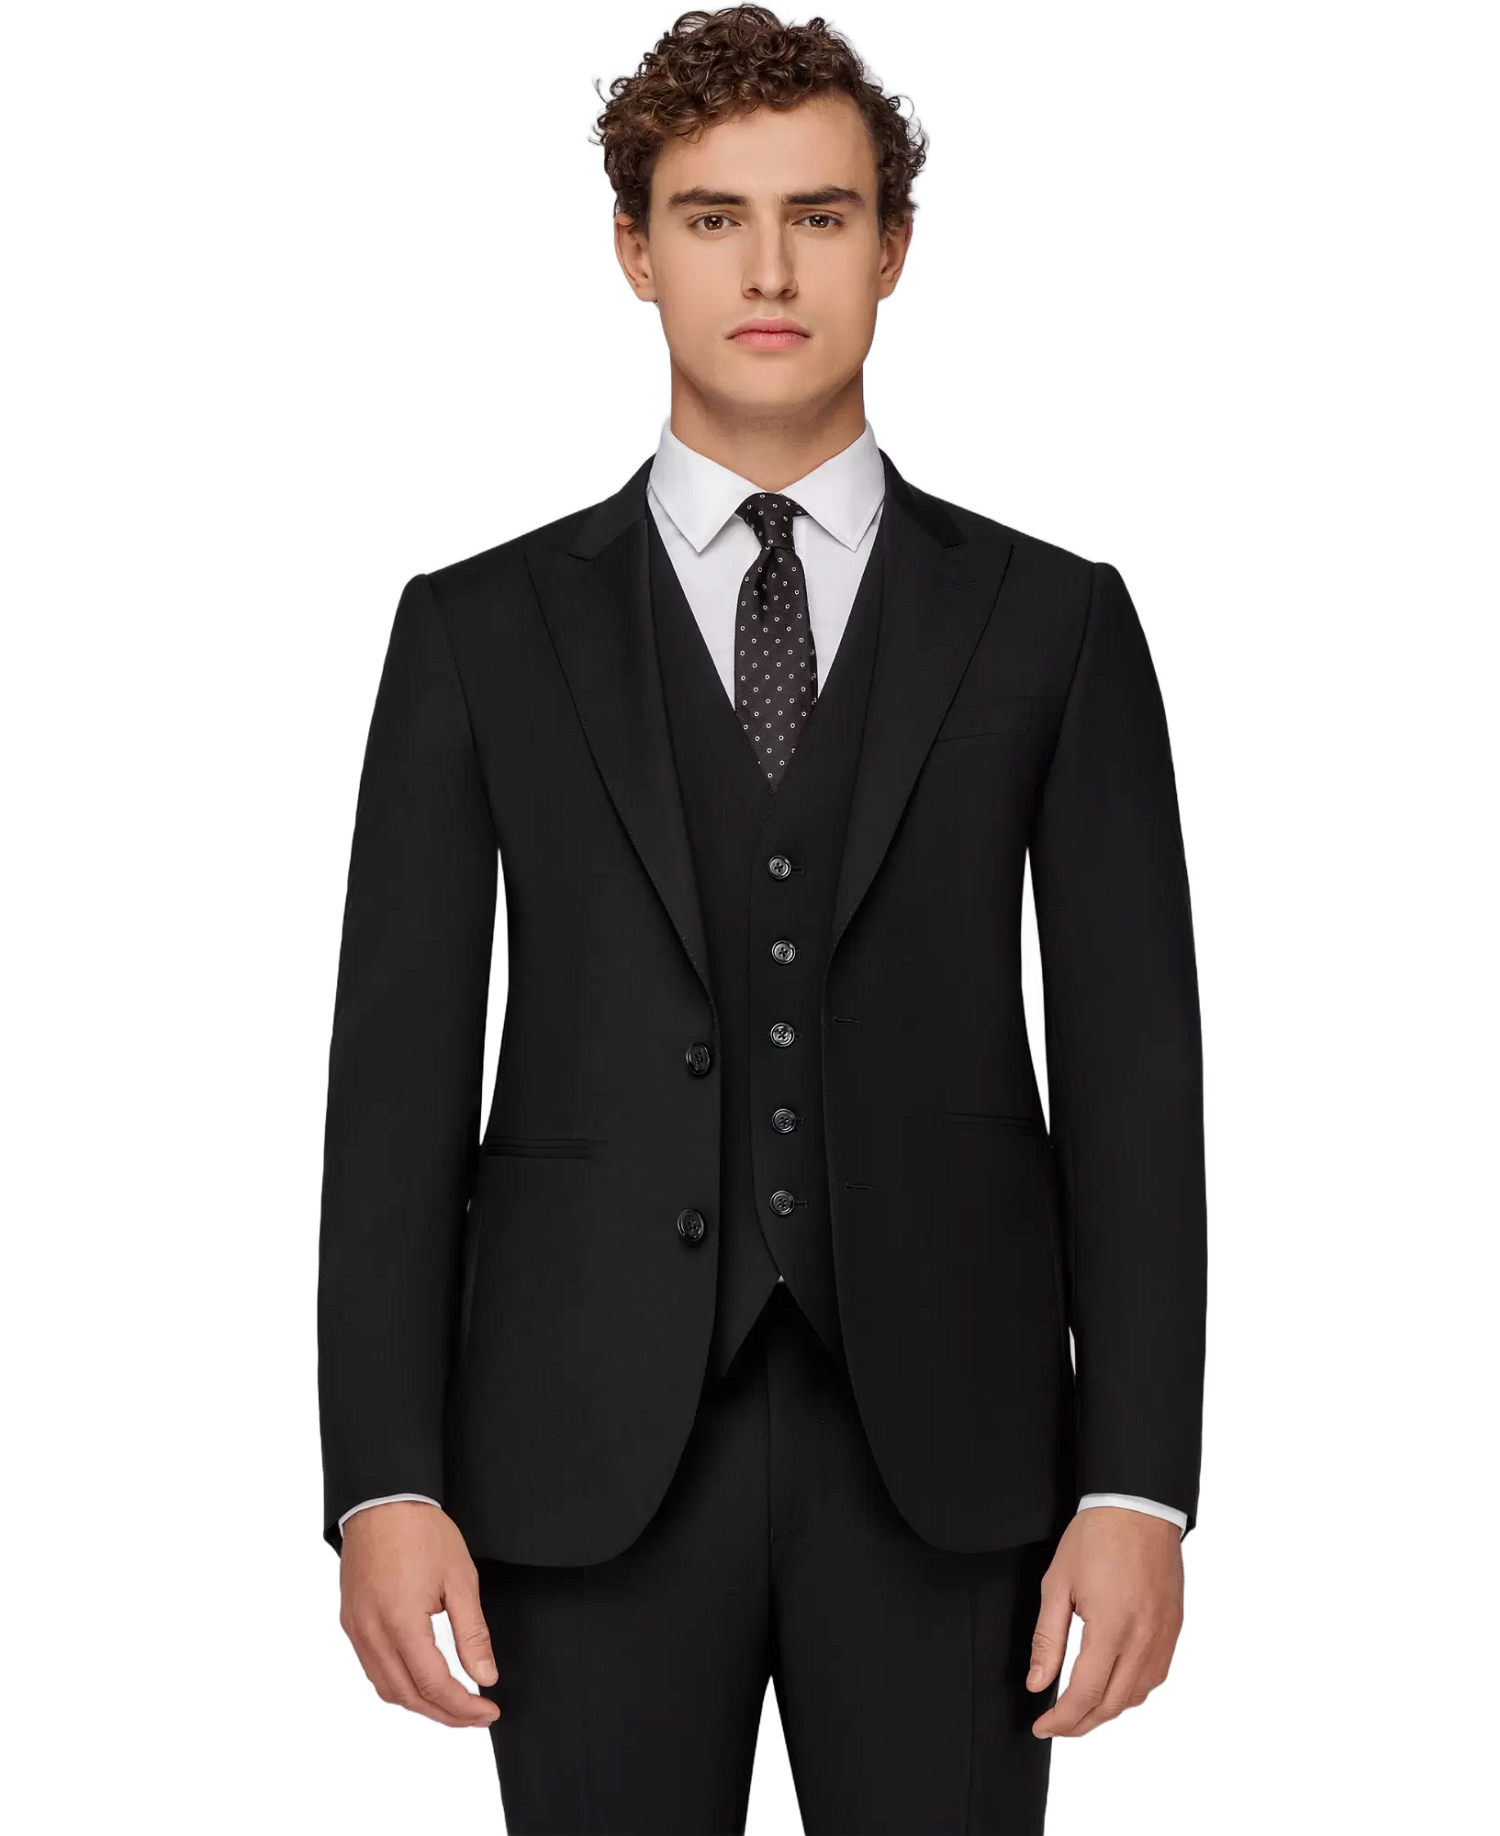 Ανδρικό Κοστούμι Με Γιλέκο Μαύρο Tailor Italian Wear